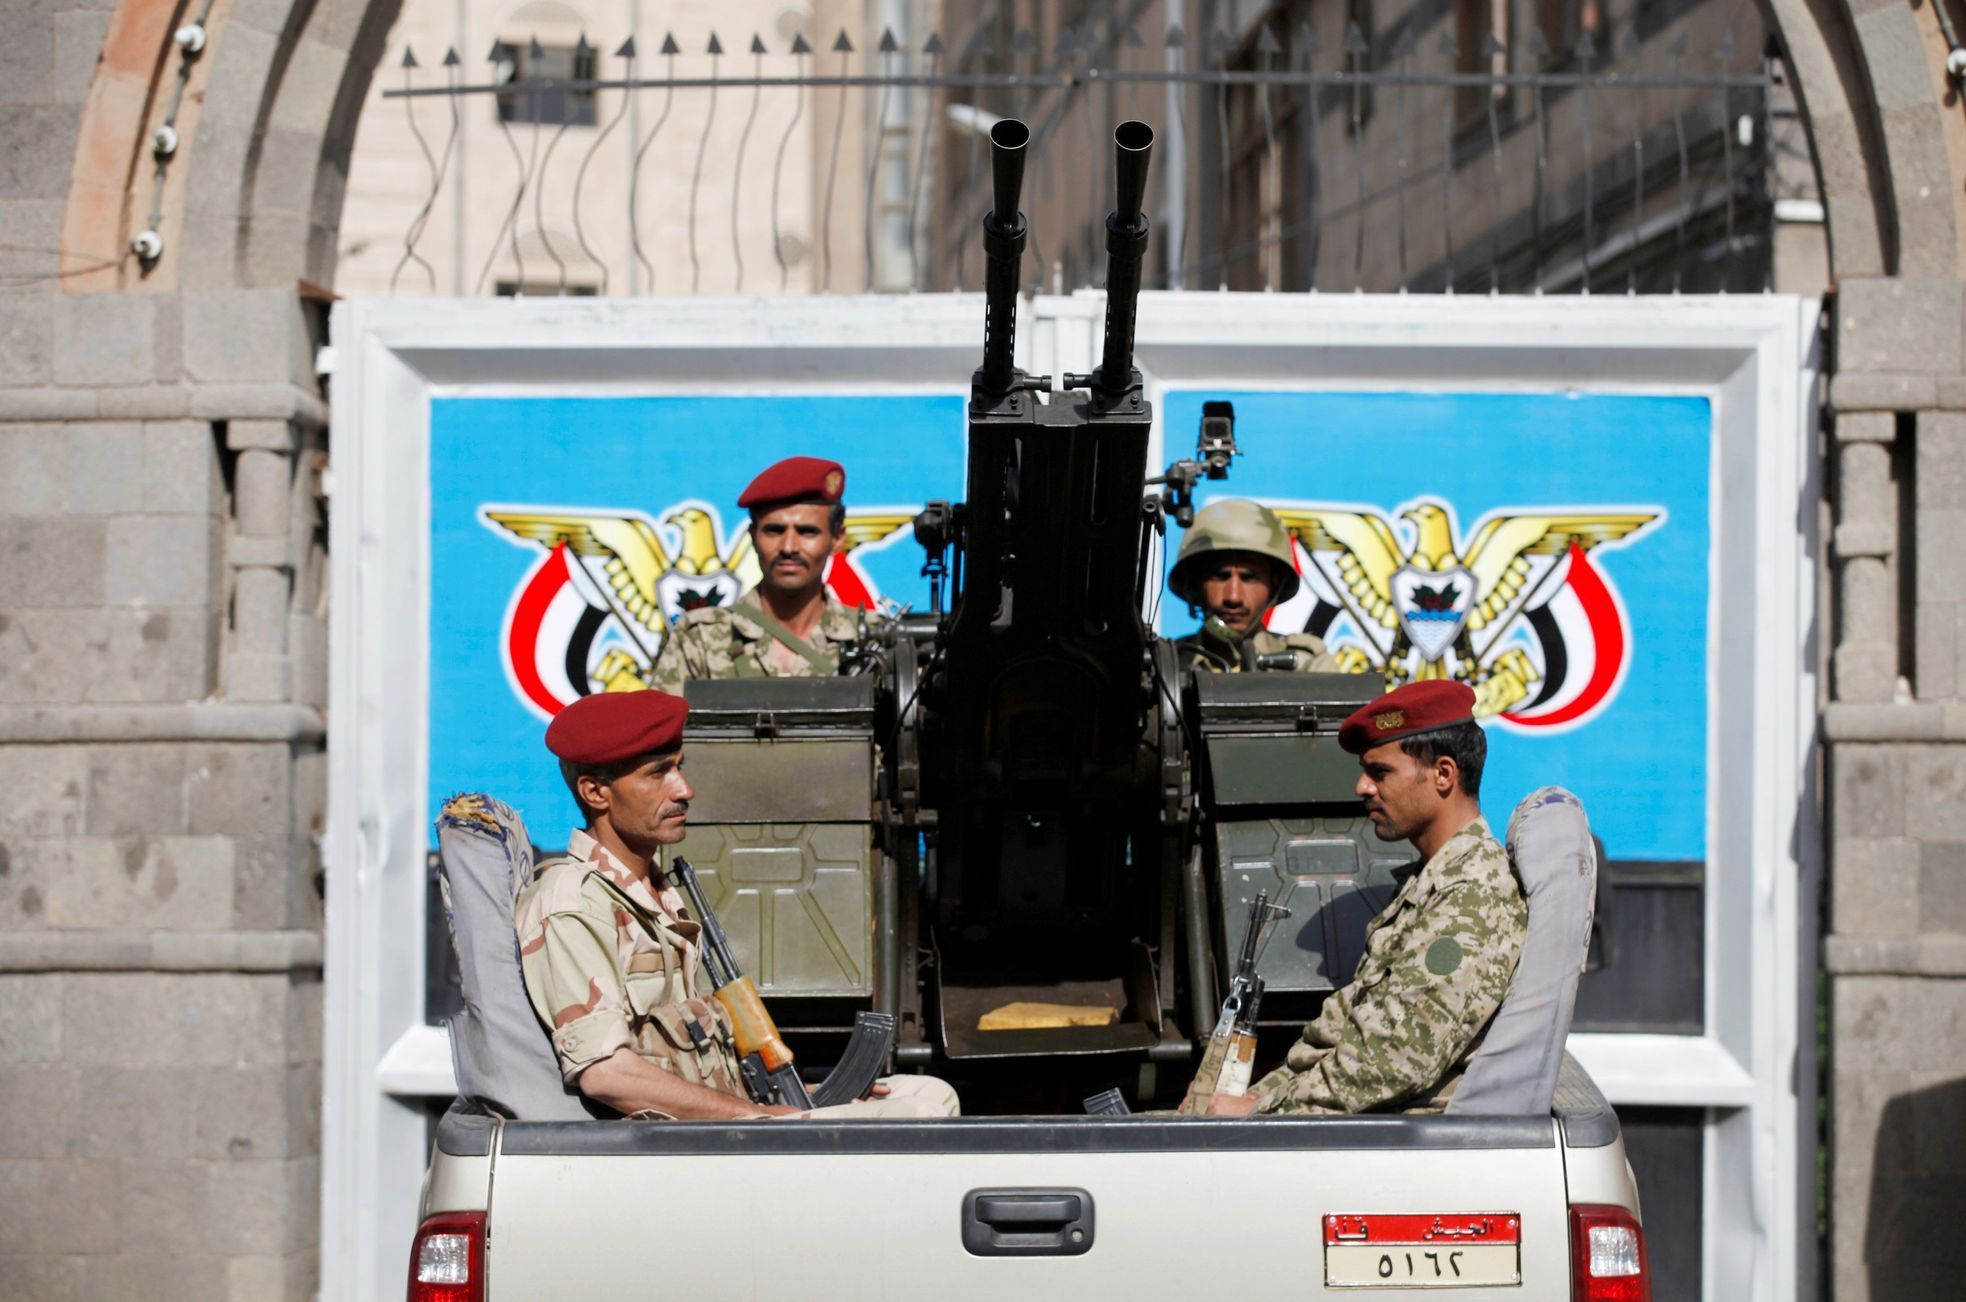 Vojáci střeží zasedání parlamentu v Jemenu.